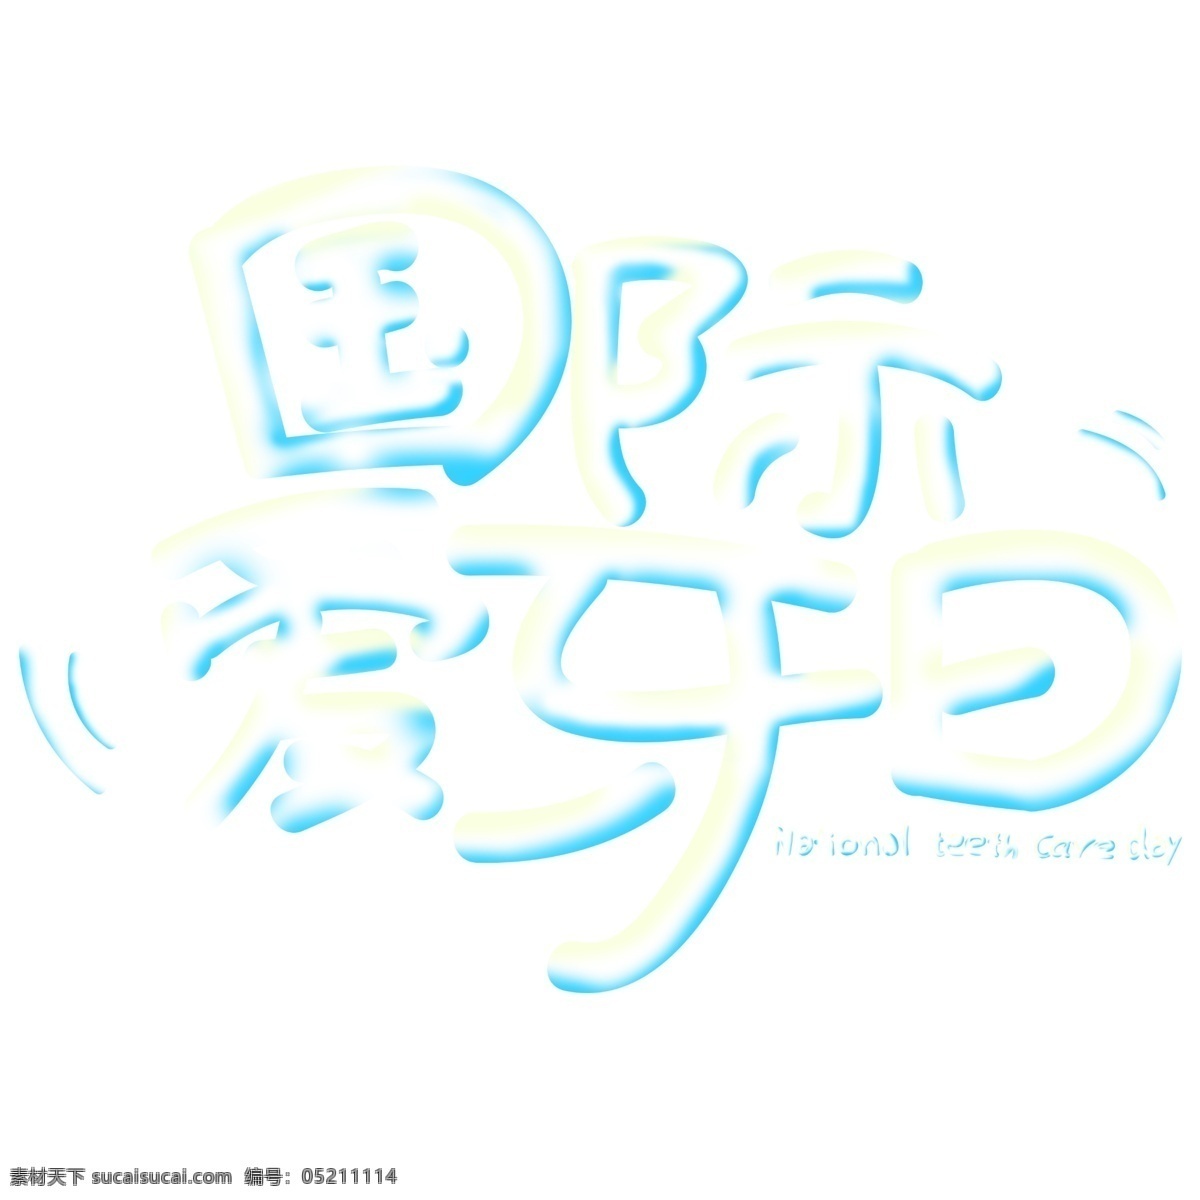 国际 爱 牙 日 艺术 字 手绘 卡通 全国爱牙日 推广图 可爱 字体设计 国际爱牙日 艺术字